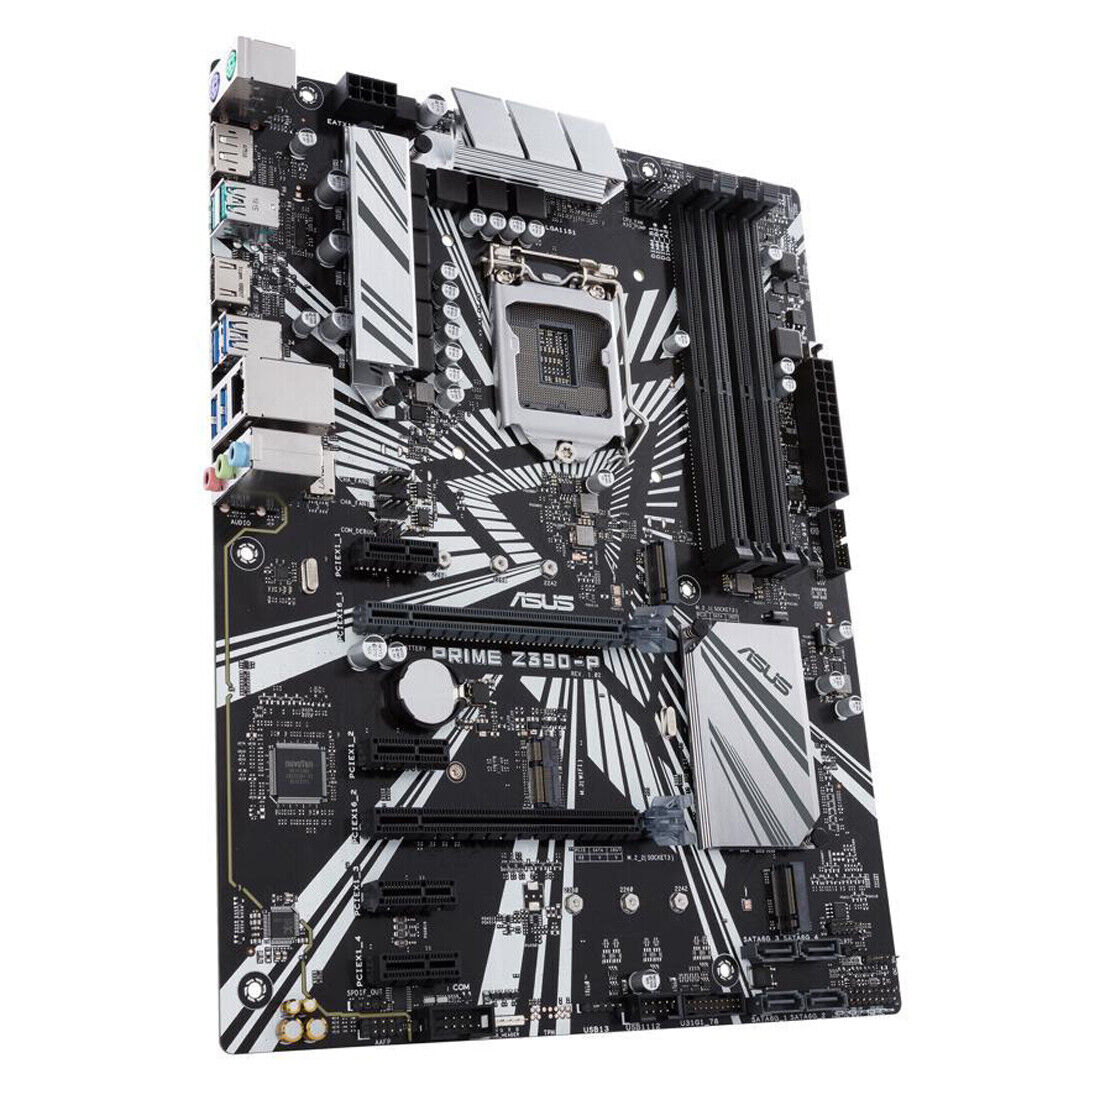 ASUS Prime Z390-P LGA 1151 Intel Z390 SATA 6Gb/s USB 3.1 ATX Intel Motherboard